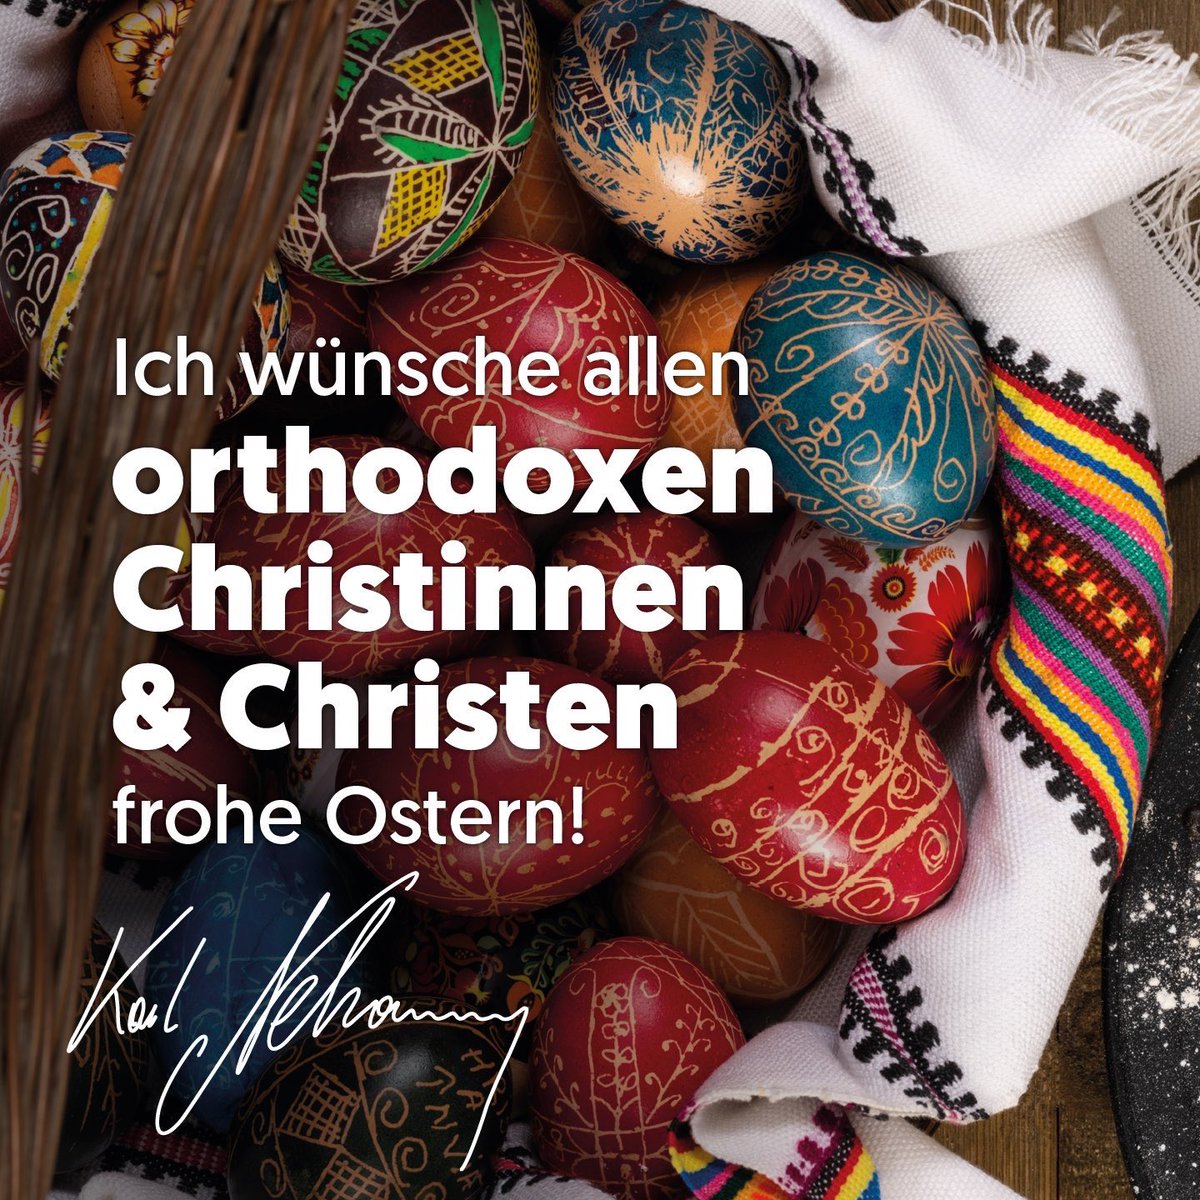 Ein gesegnetes Osterfest allen orthodoxen Christinnen und Christen!